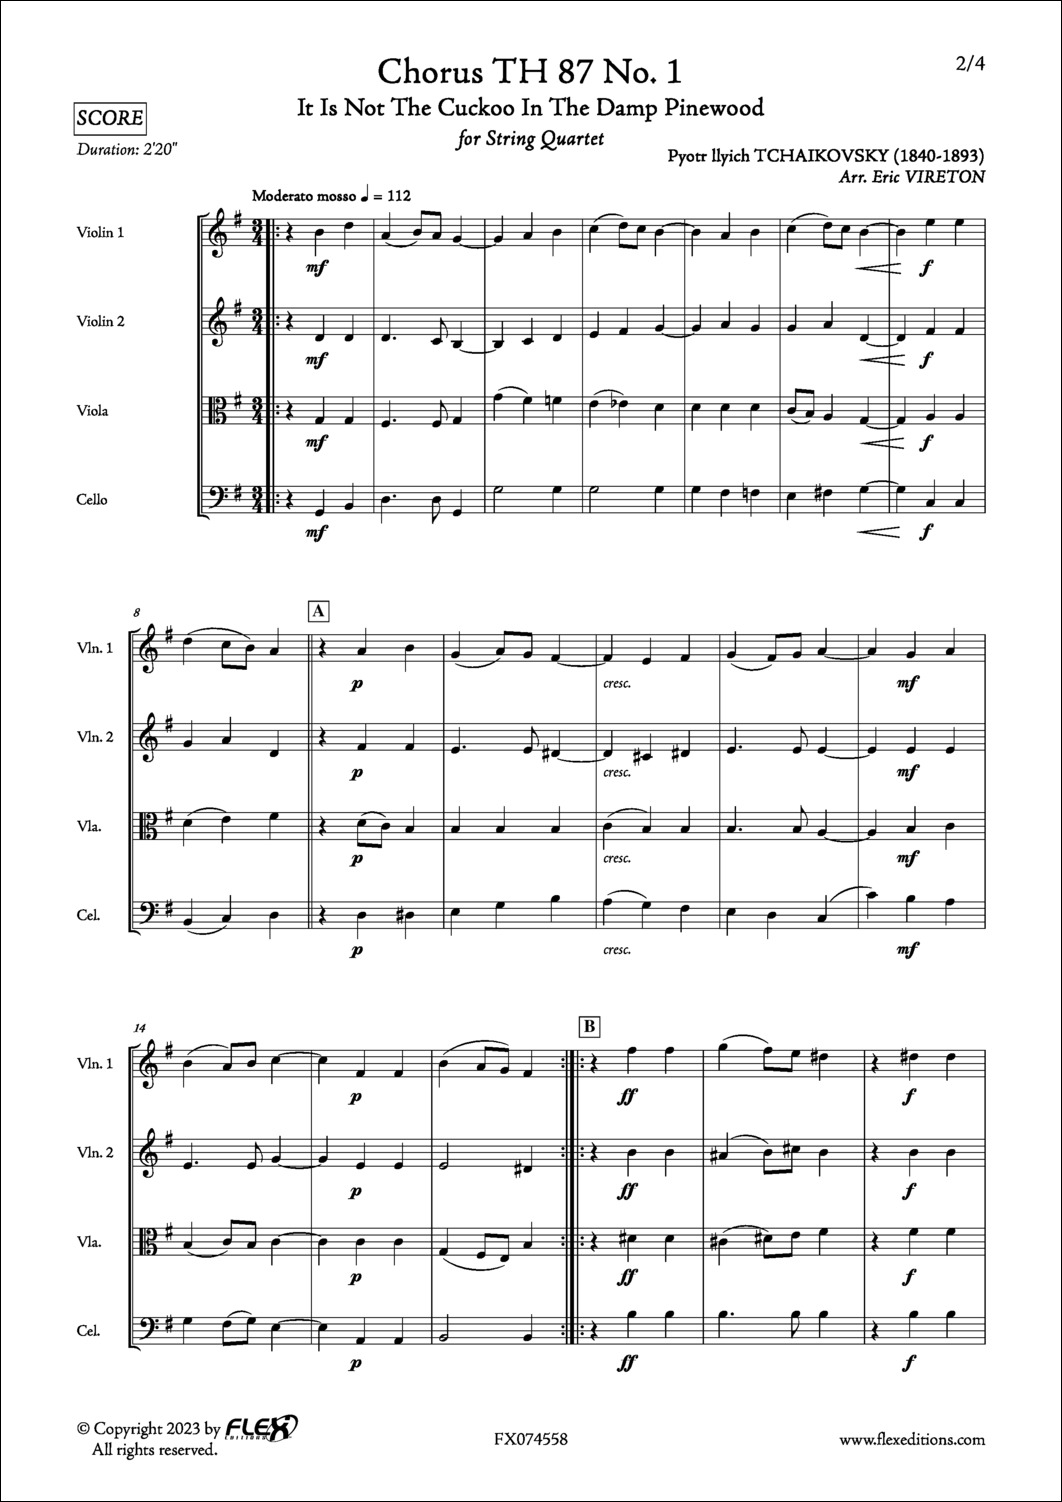 Choeur TH 87 No. 1 - P. I. TCHAIKOVSKY - <font color=#666666>Quatuor à Cordes</font>